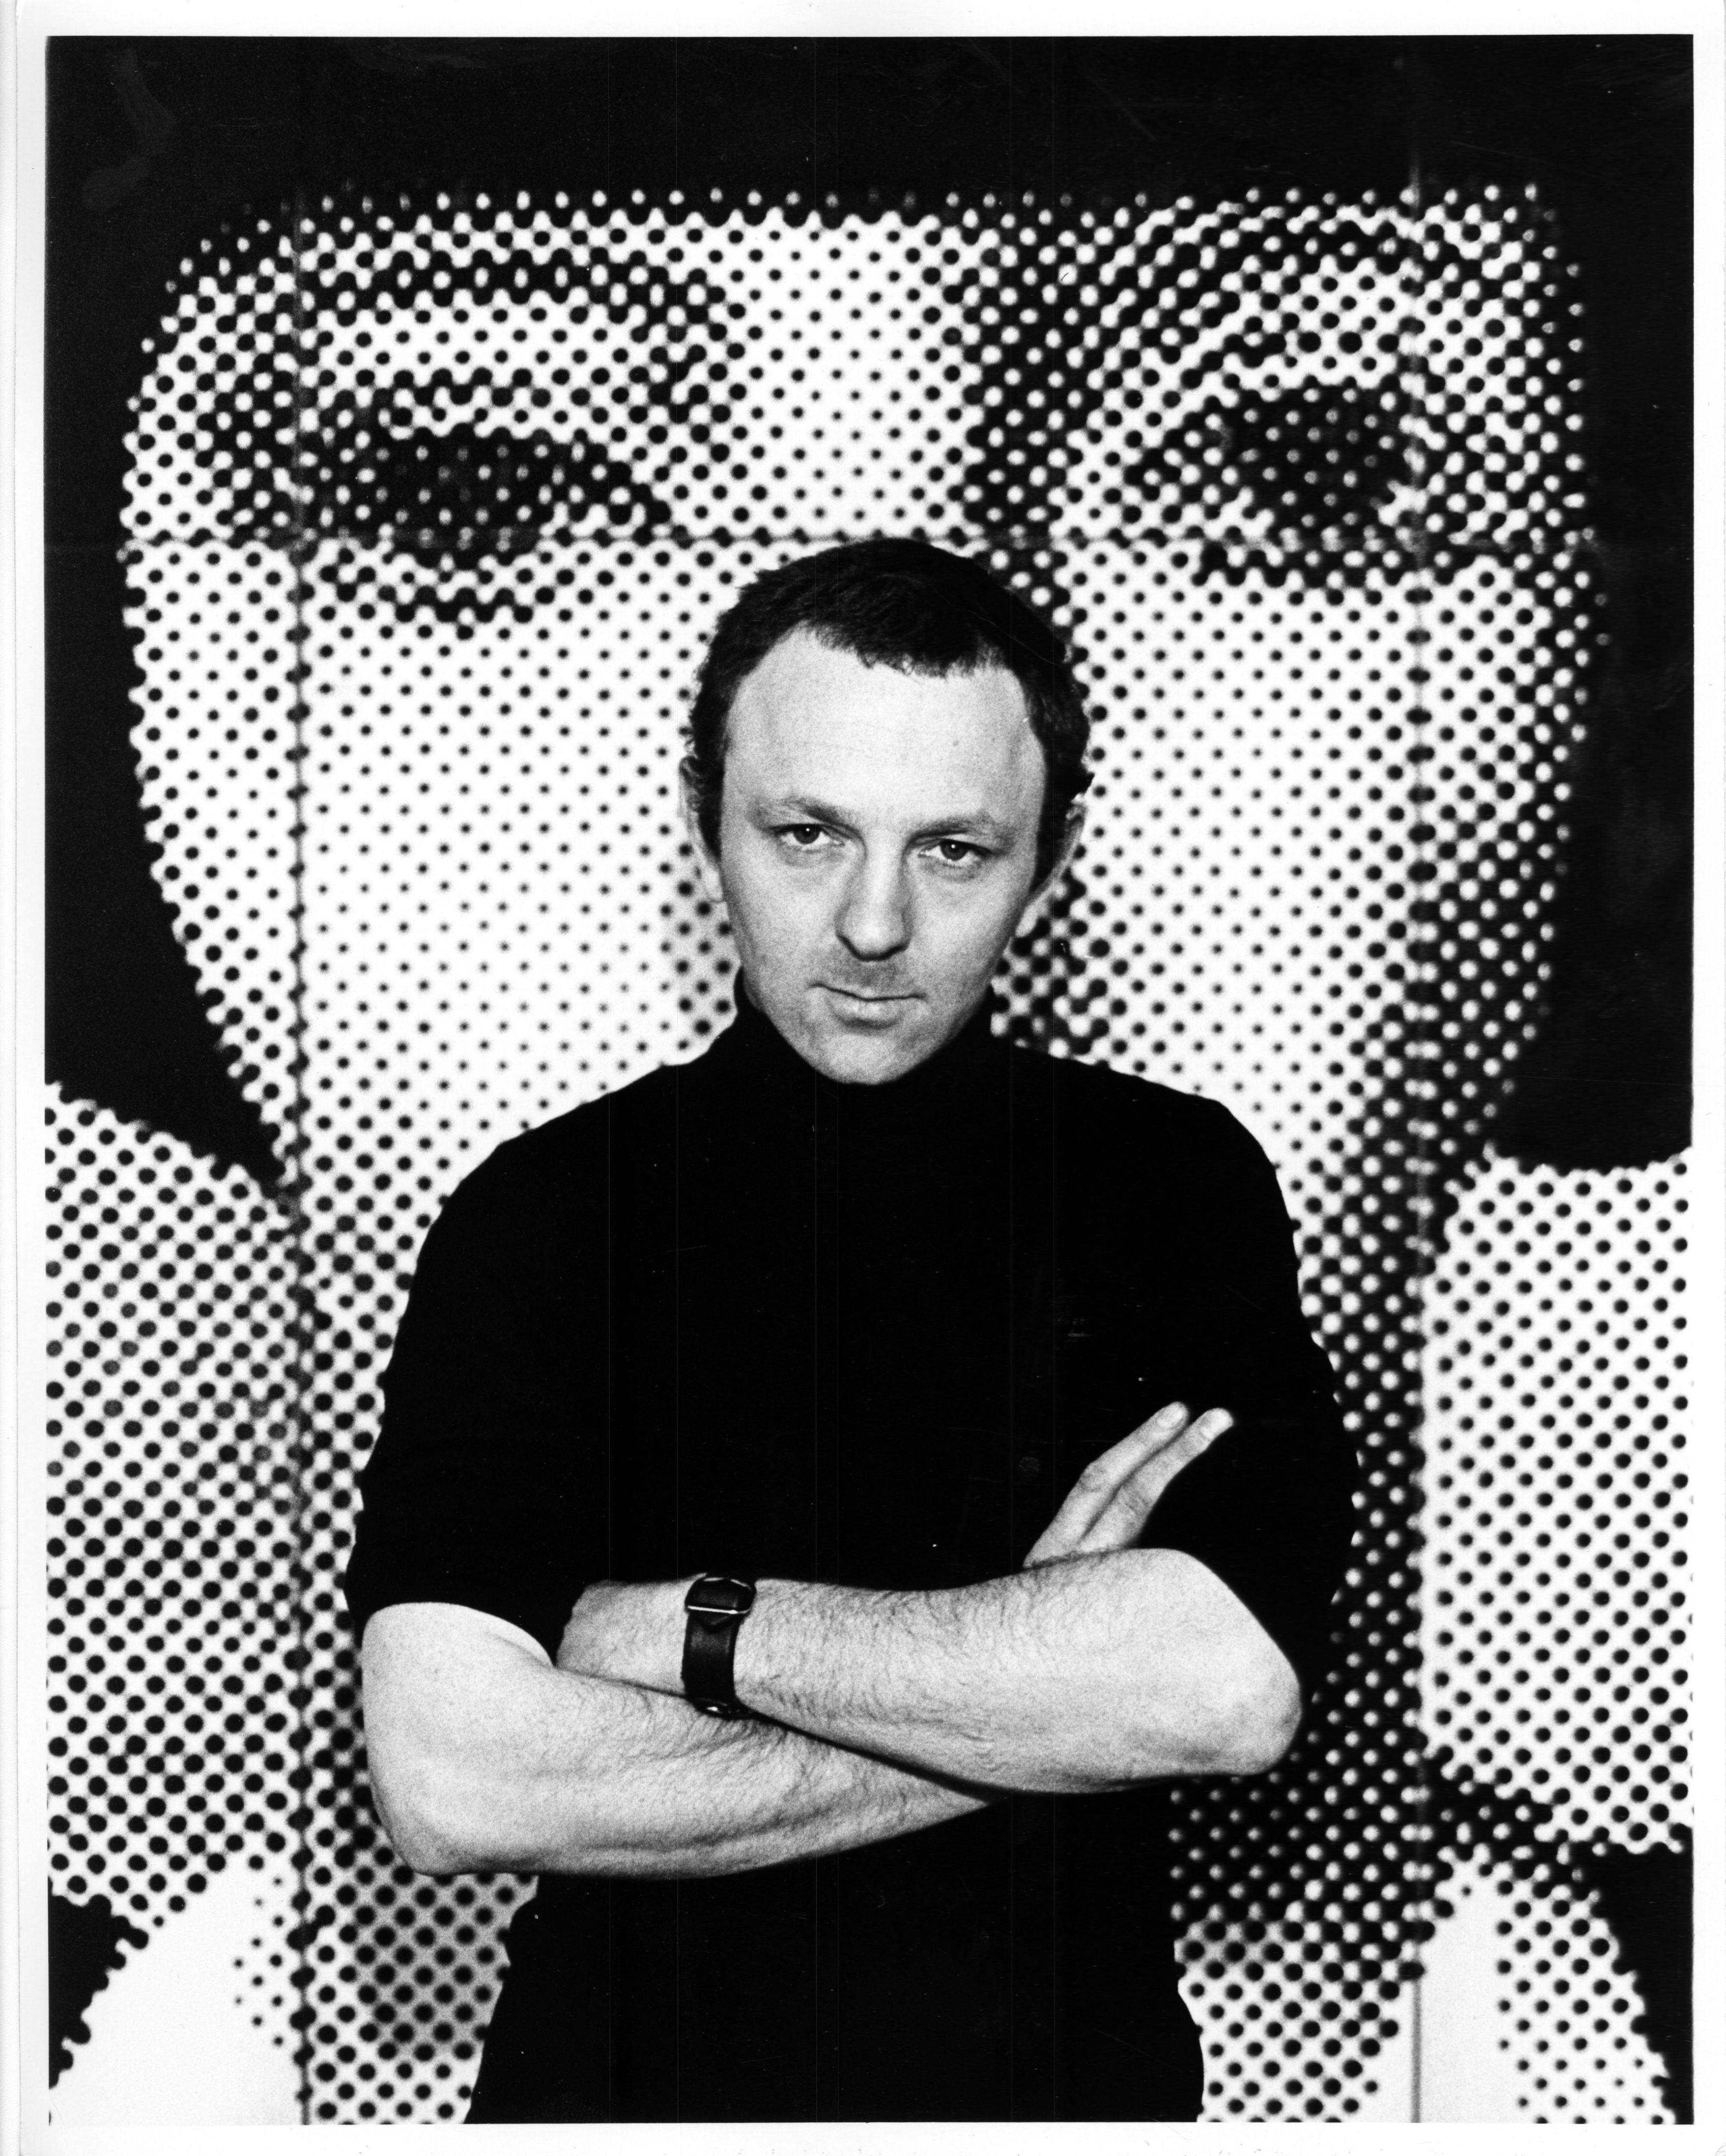 Der britische Pop-Künstler und Bildhauer Gerald Laing in seinem Atelier am 30. Oktober 1968. Alte Silbergelatine-Ausstellungsfotografie von Jack Mitchell. Rückseitig signiert von Jack Mitchell.

Der amerikanische Fotograf Jack Mitchell (1925-2013)